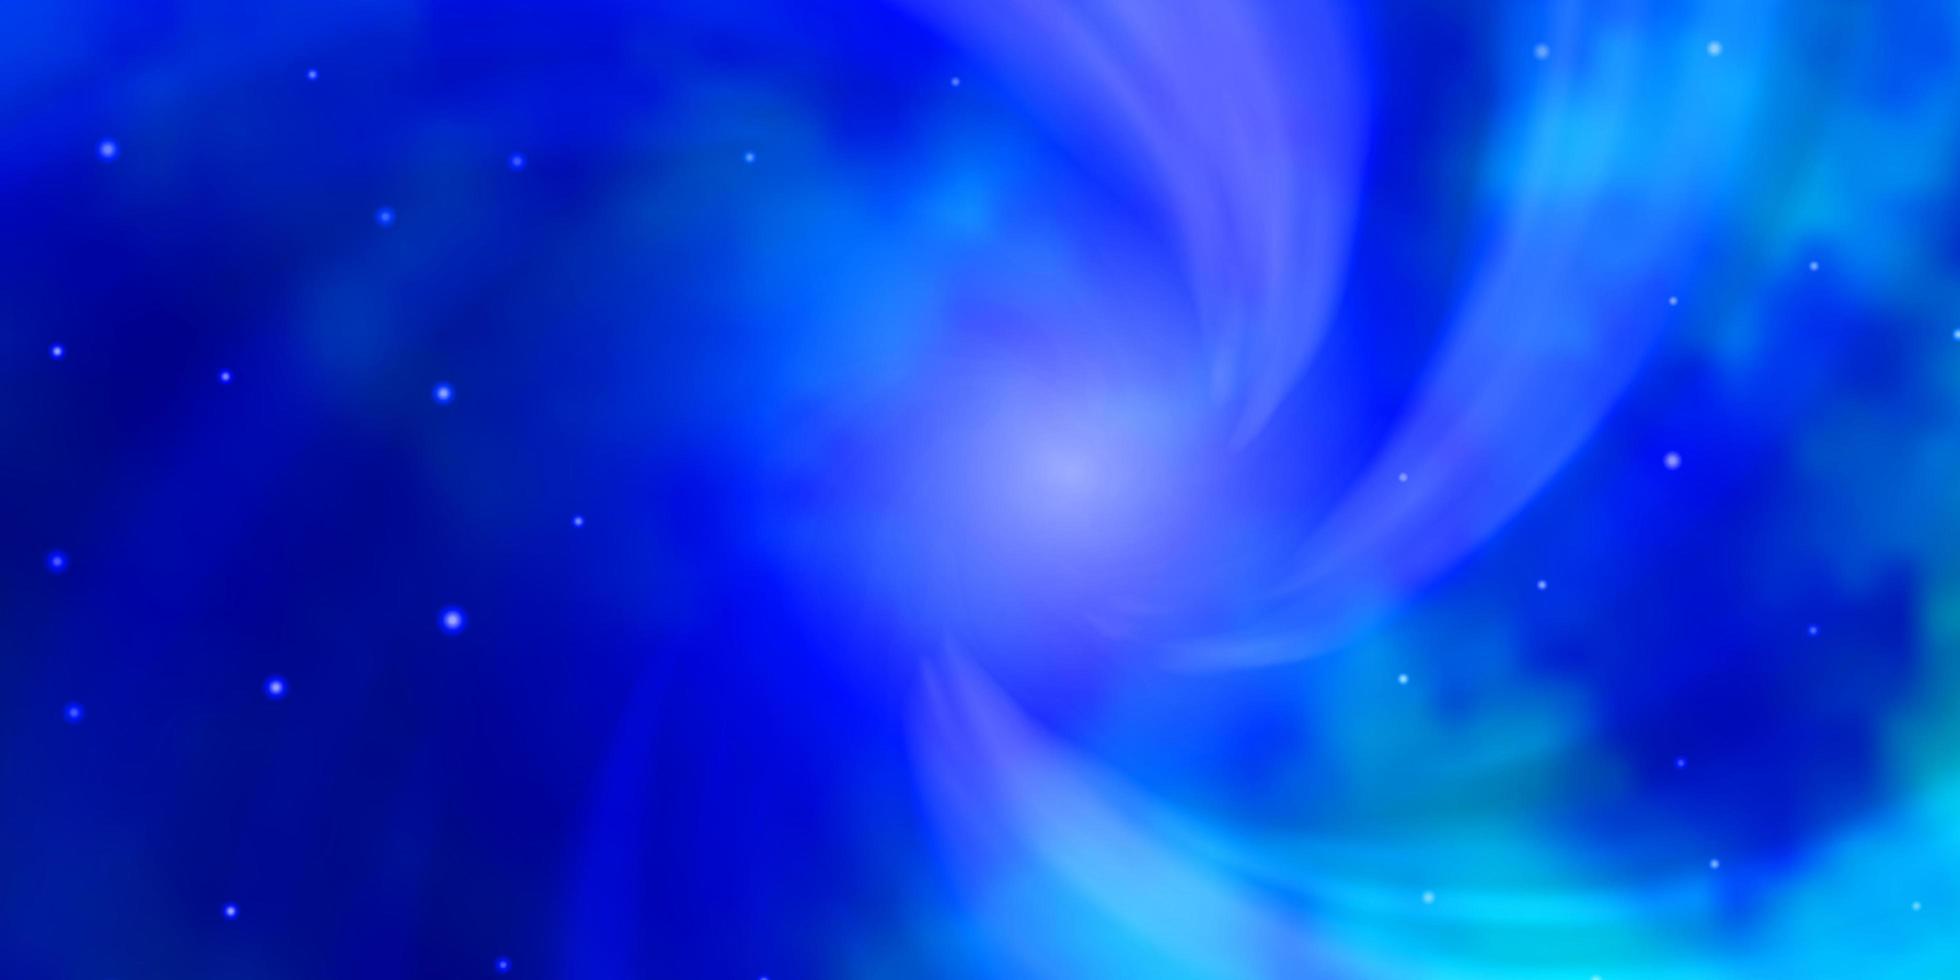 ljusblå vektorbakgrund med små och stora stjärnor. lysande färgglad illustration med små och stora stjärnor. mönster för inslagning av presenter. vektor